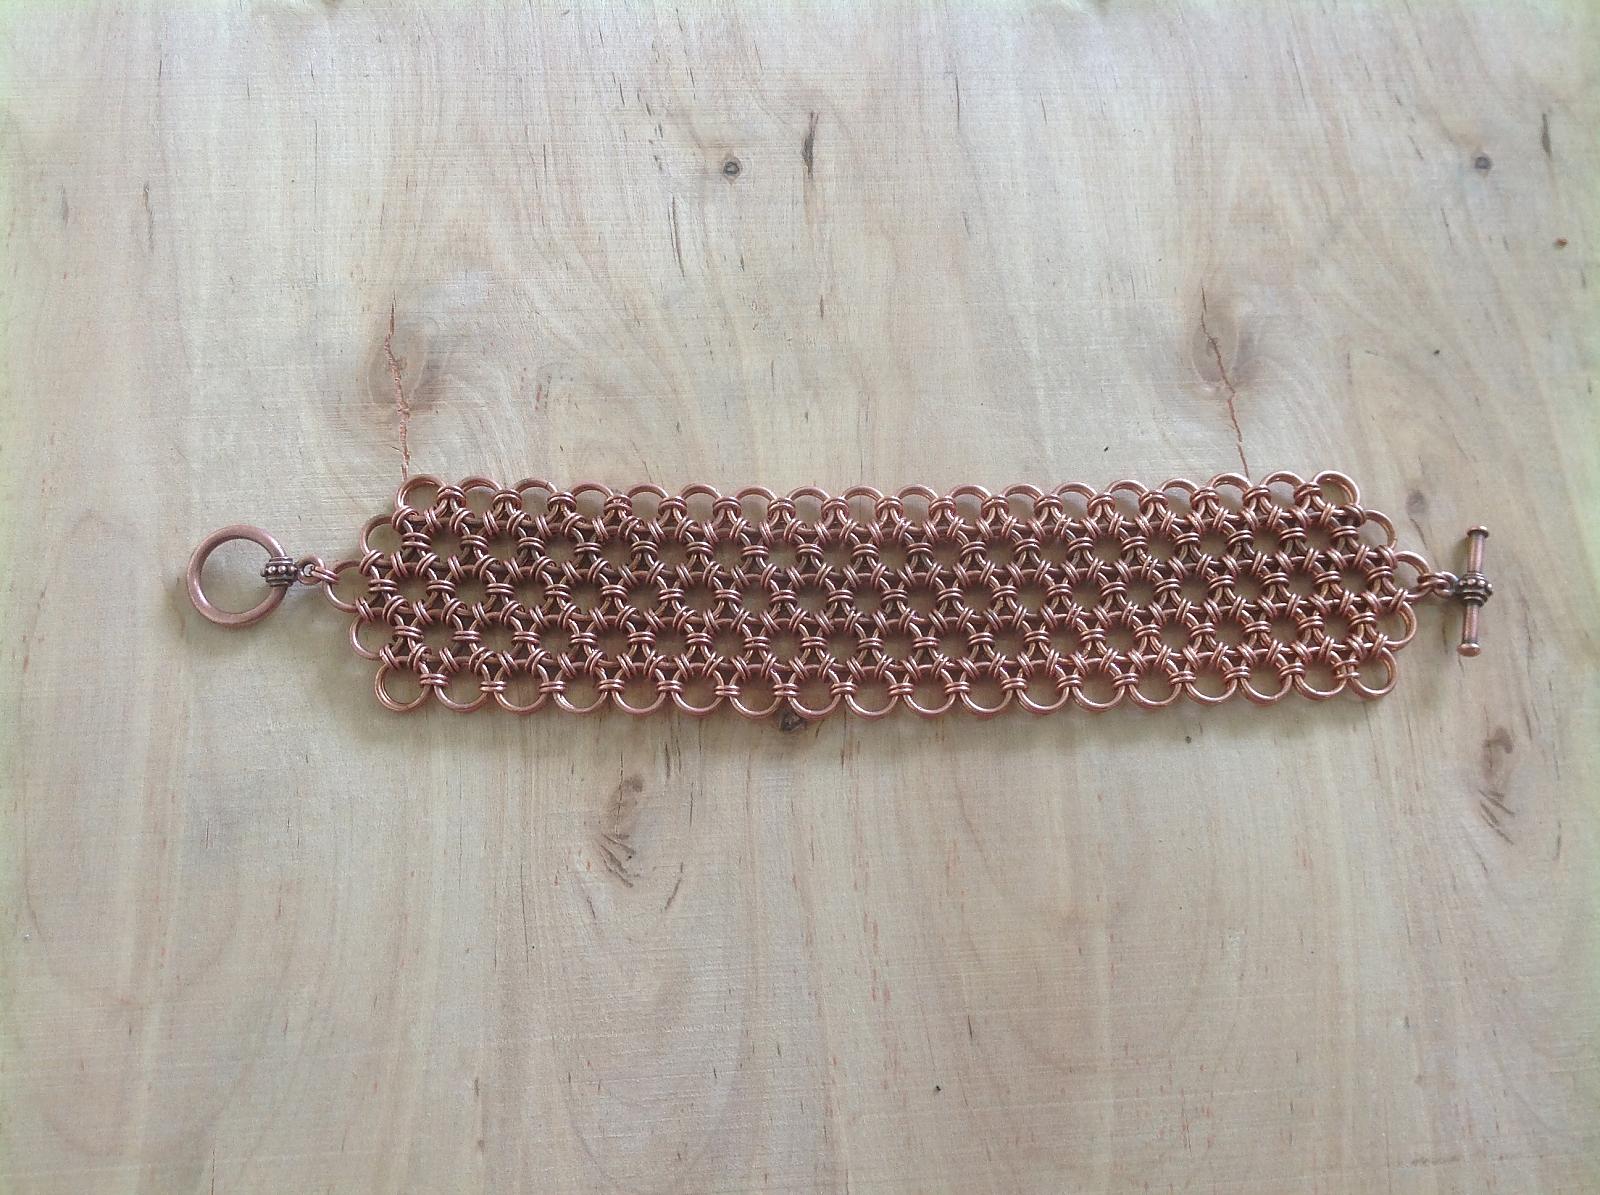 Japanese Lace Bracelet